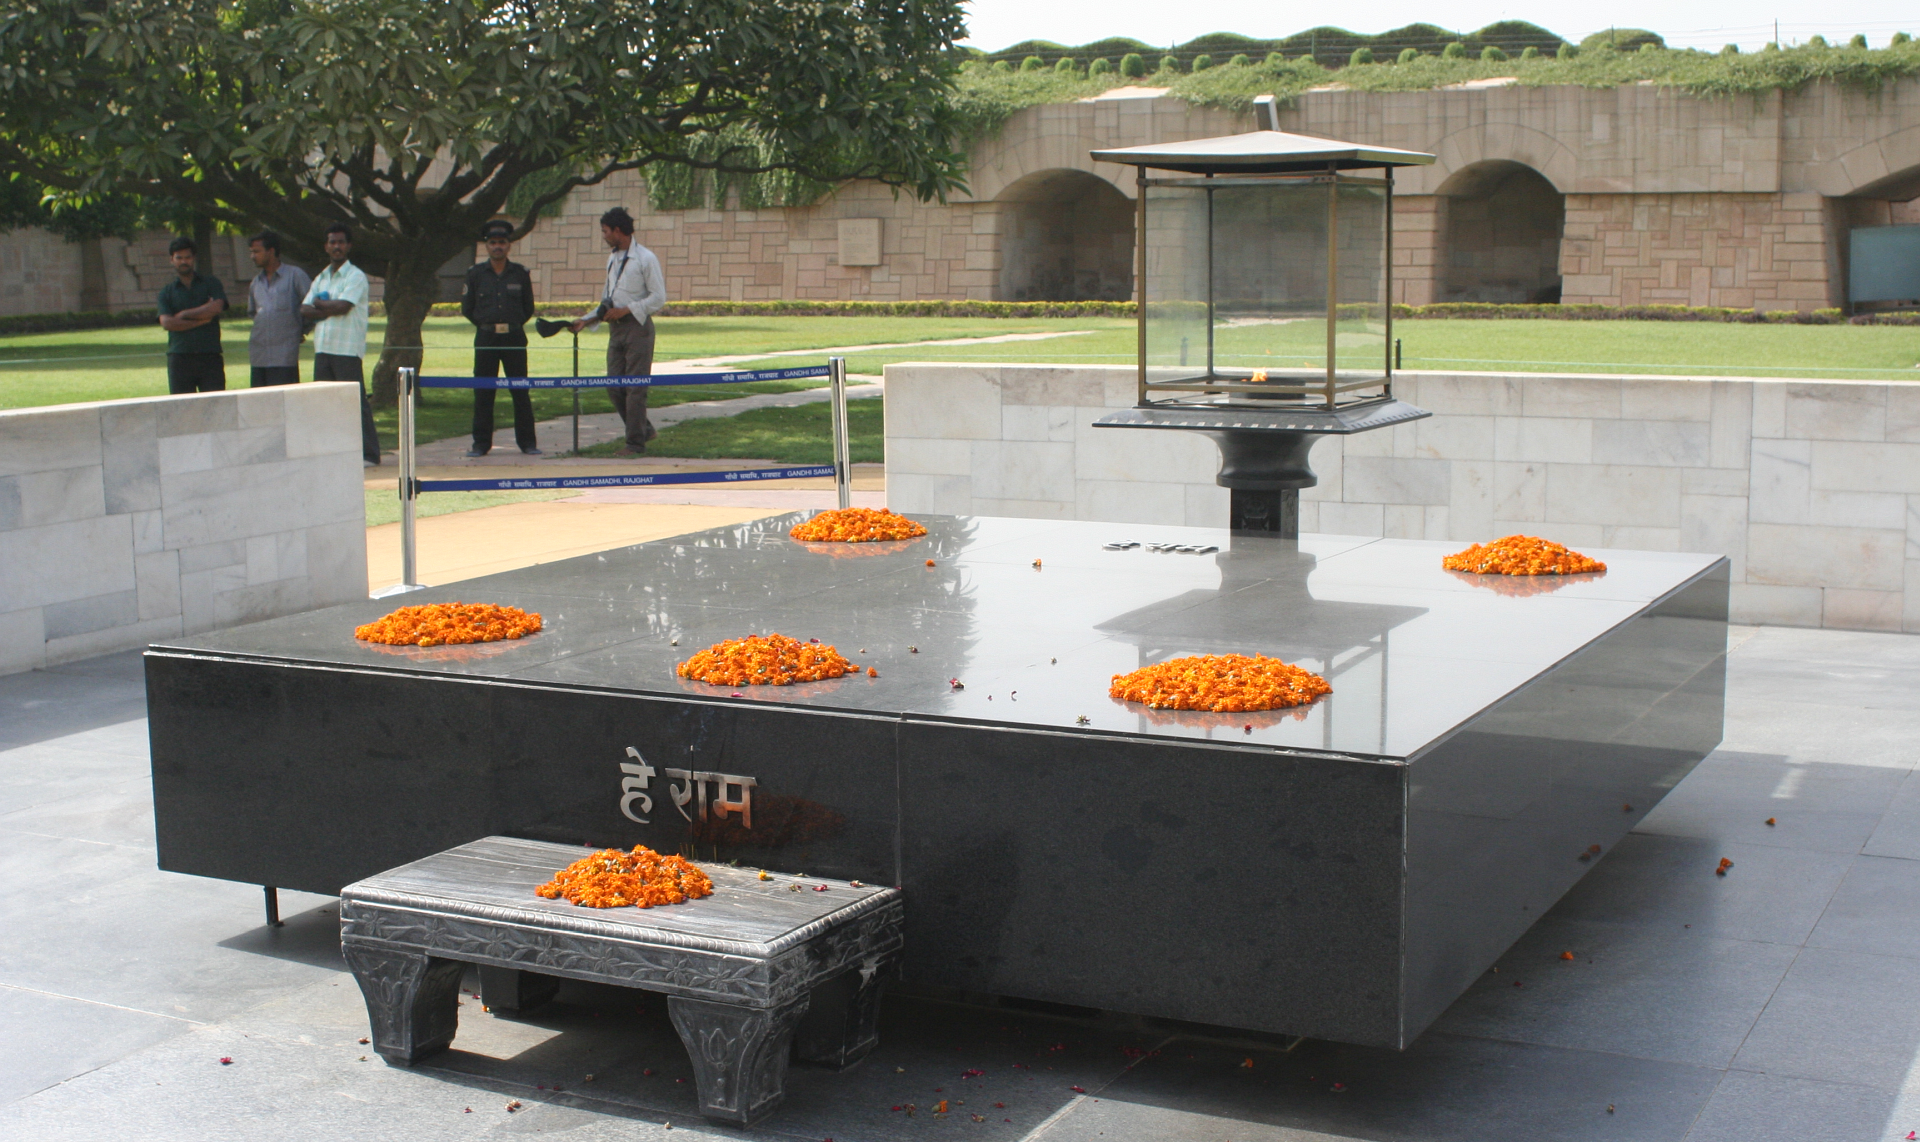 Apesar das diferenças ideológicas, brasileiro deverá colocar flores sobre o túmulo onde estão as cinzas do líder indiano, a exemplo do que fizeram ex-presidentes durante seus mandatos